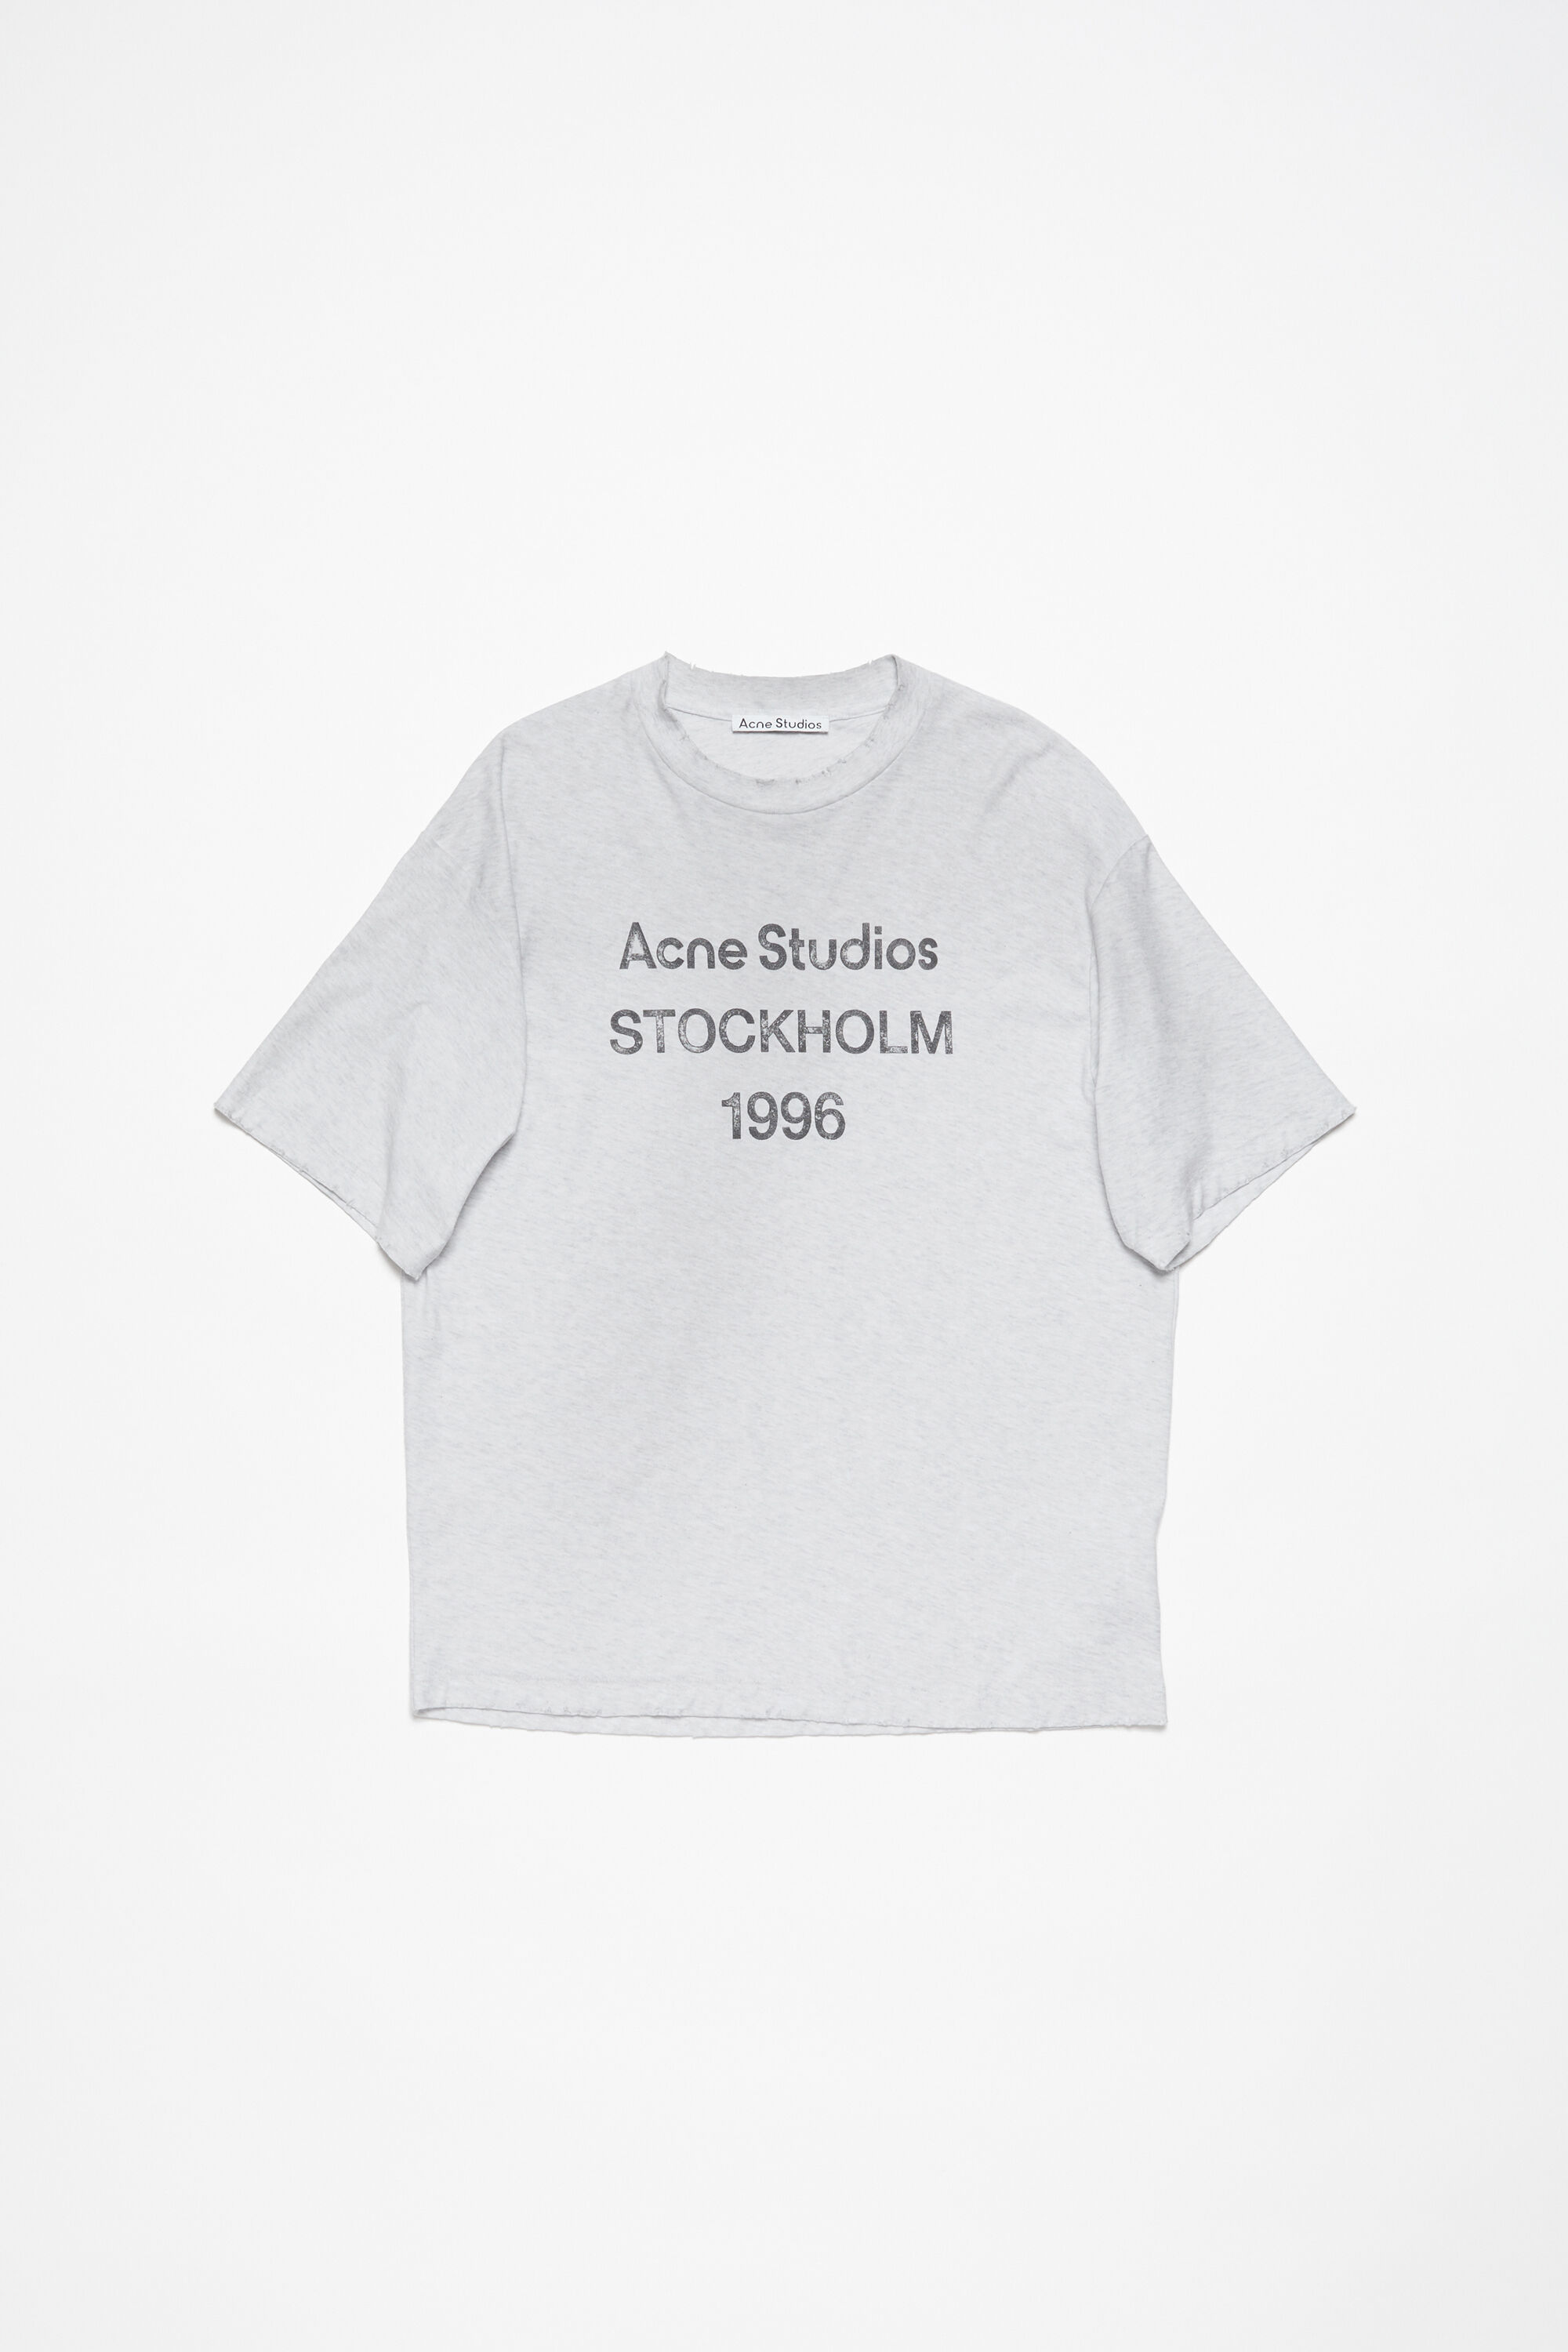 Acne Studios - ロゴTシャツ - リラックスフィット - ペールグレーメランジ